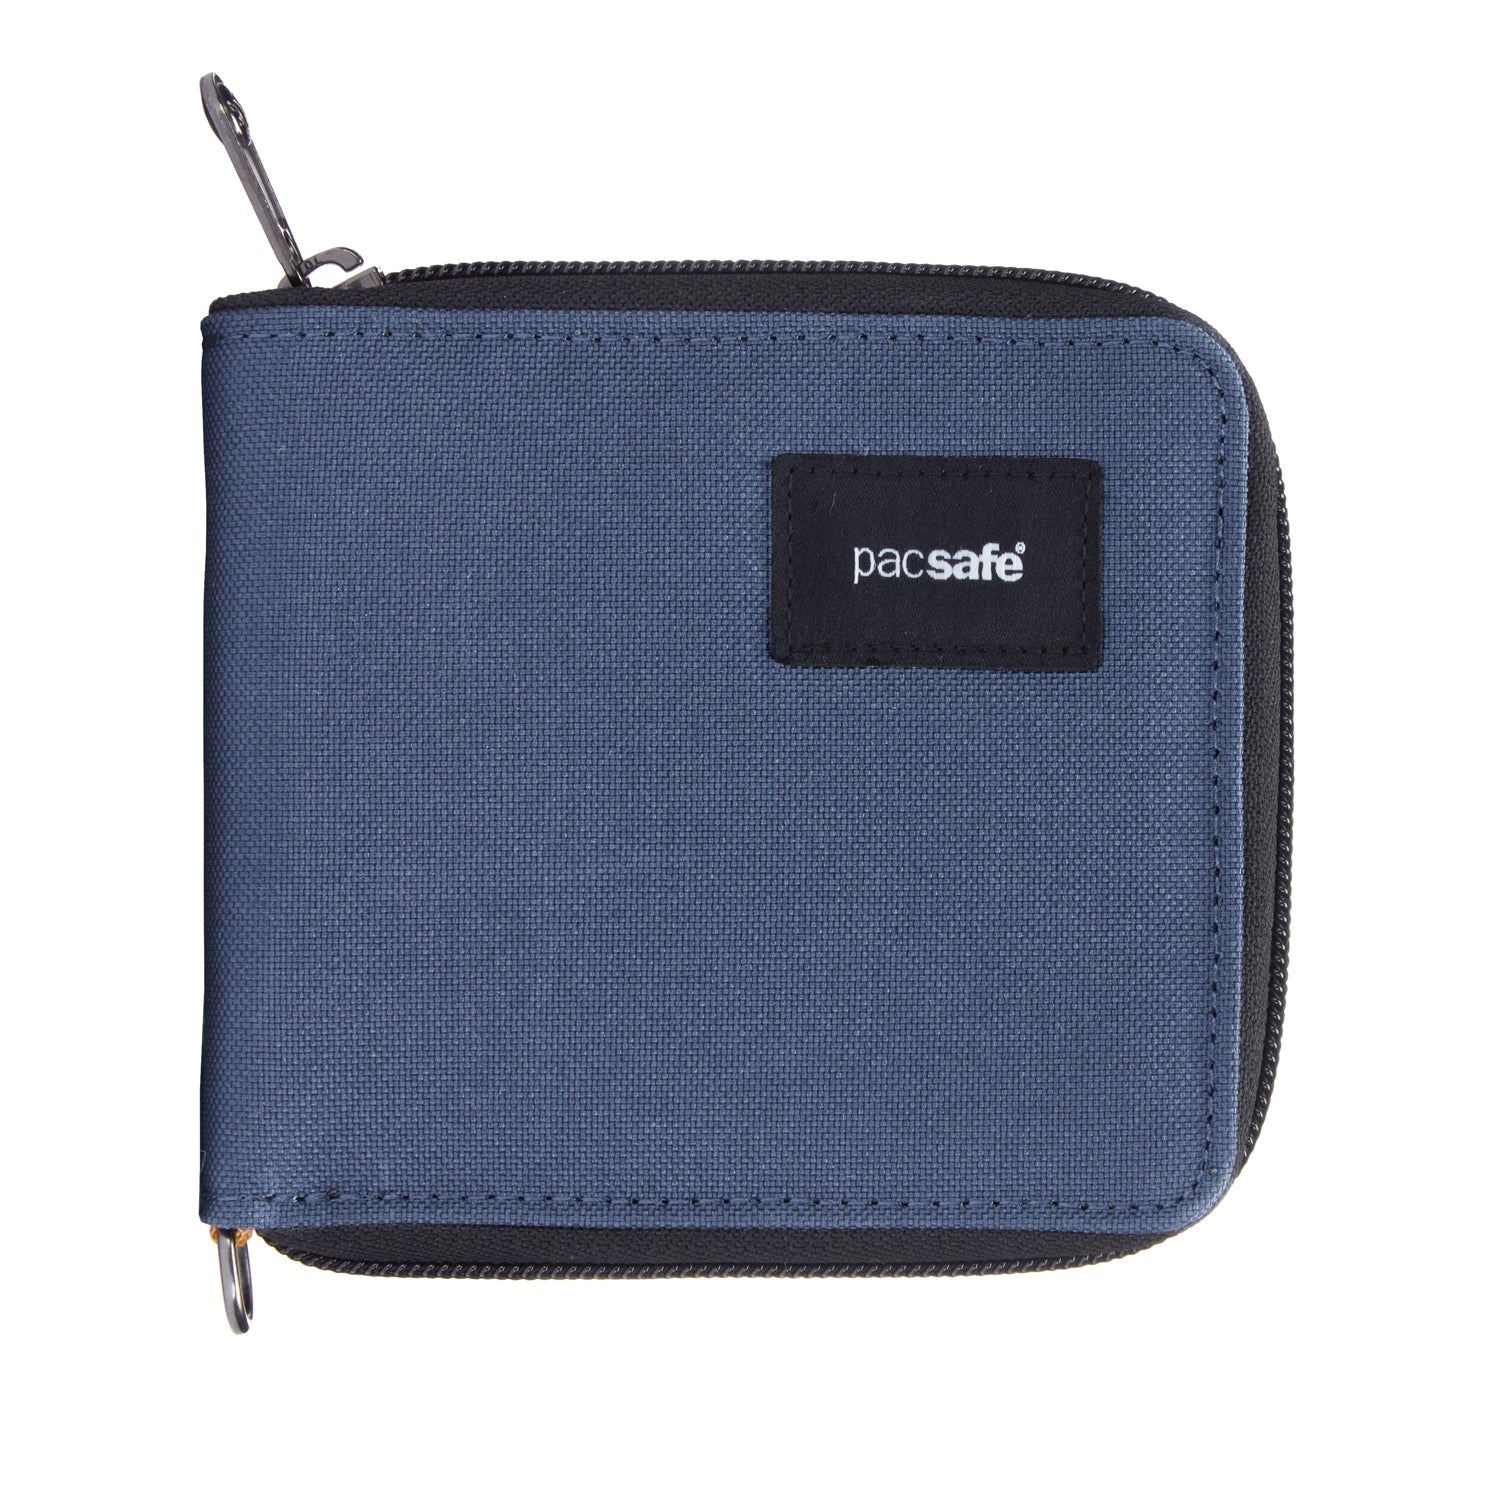 RFIDsafe RFID blocking zip around wallet